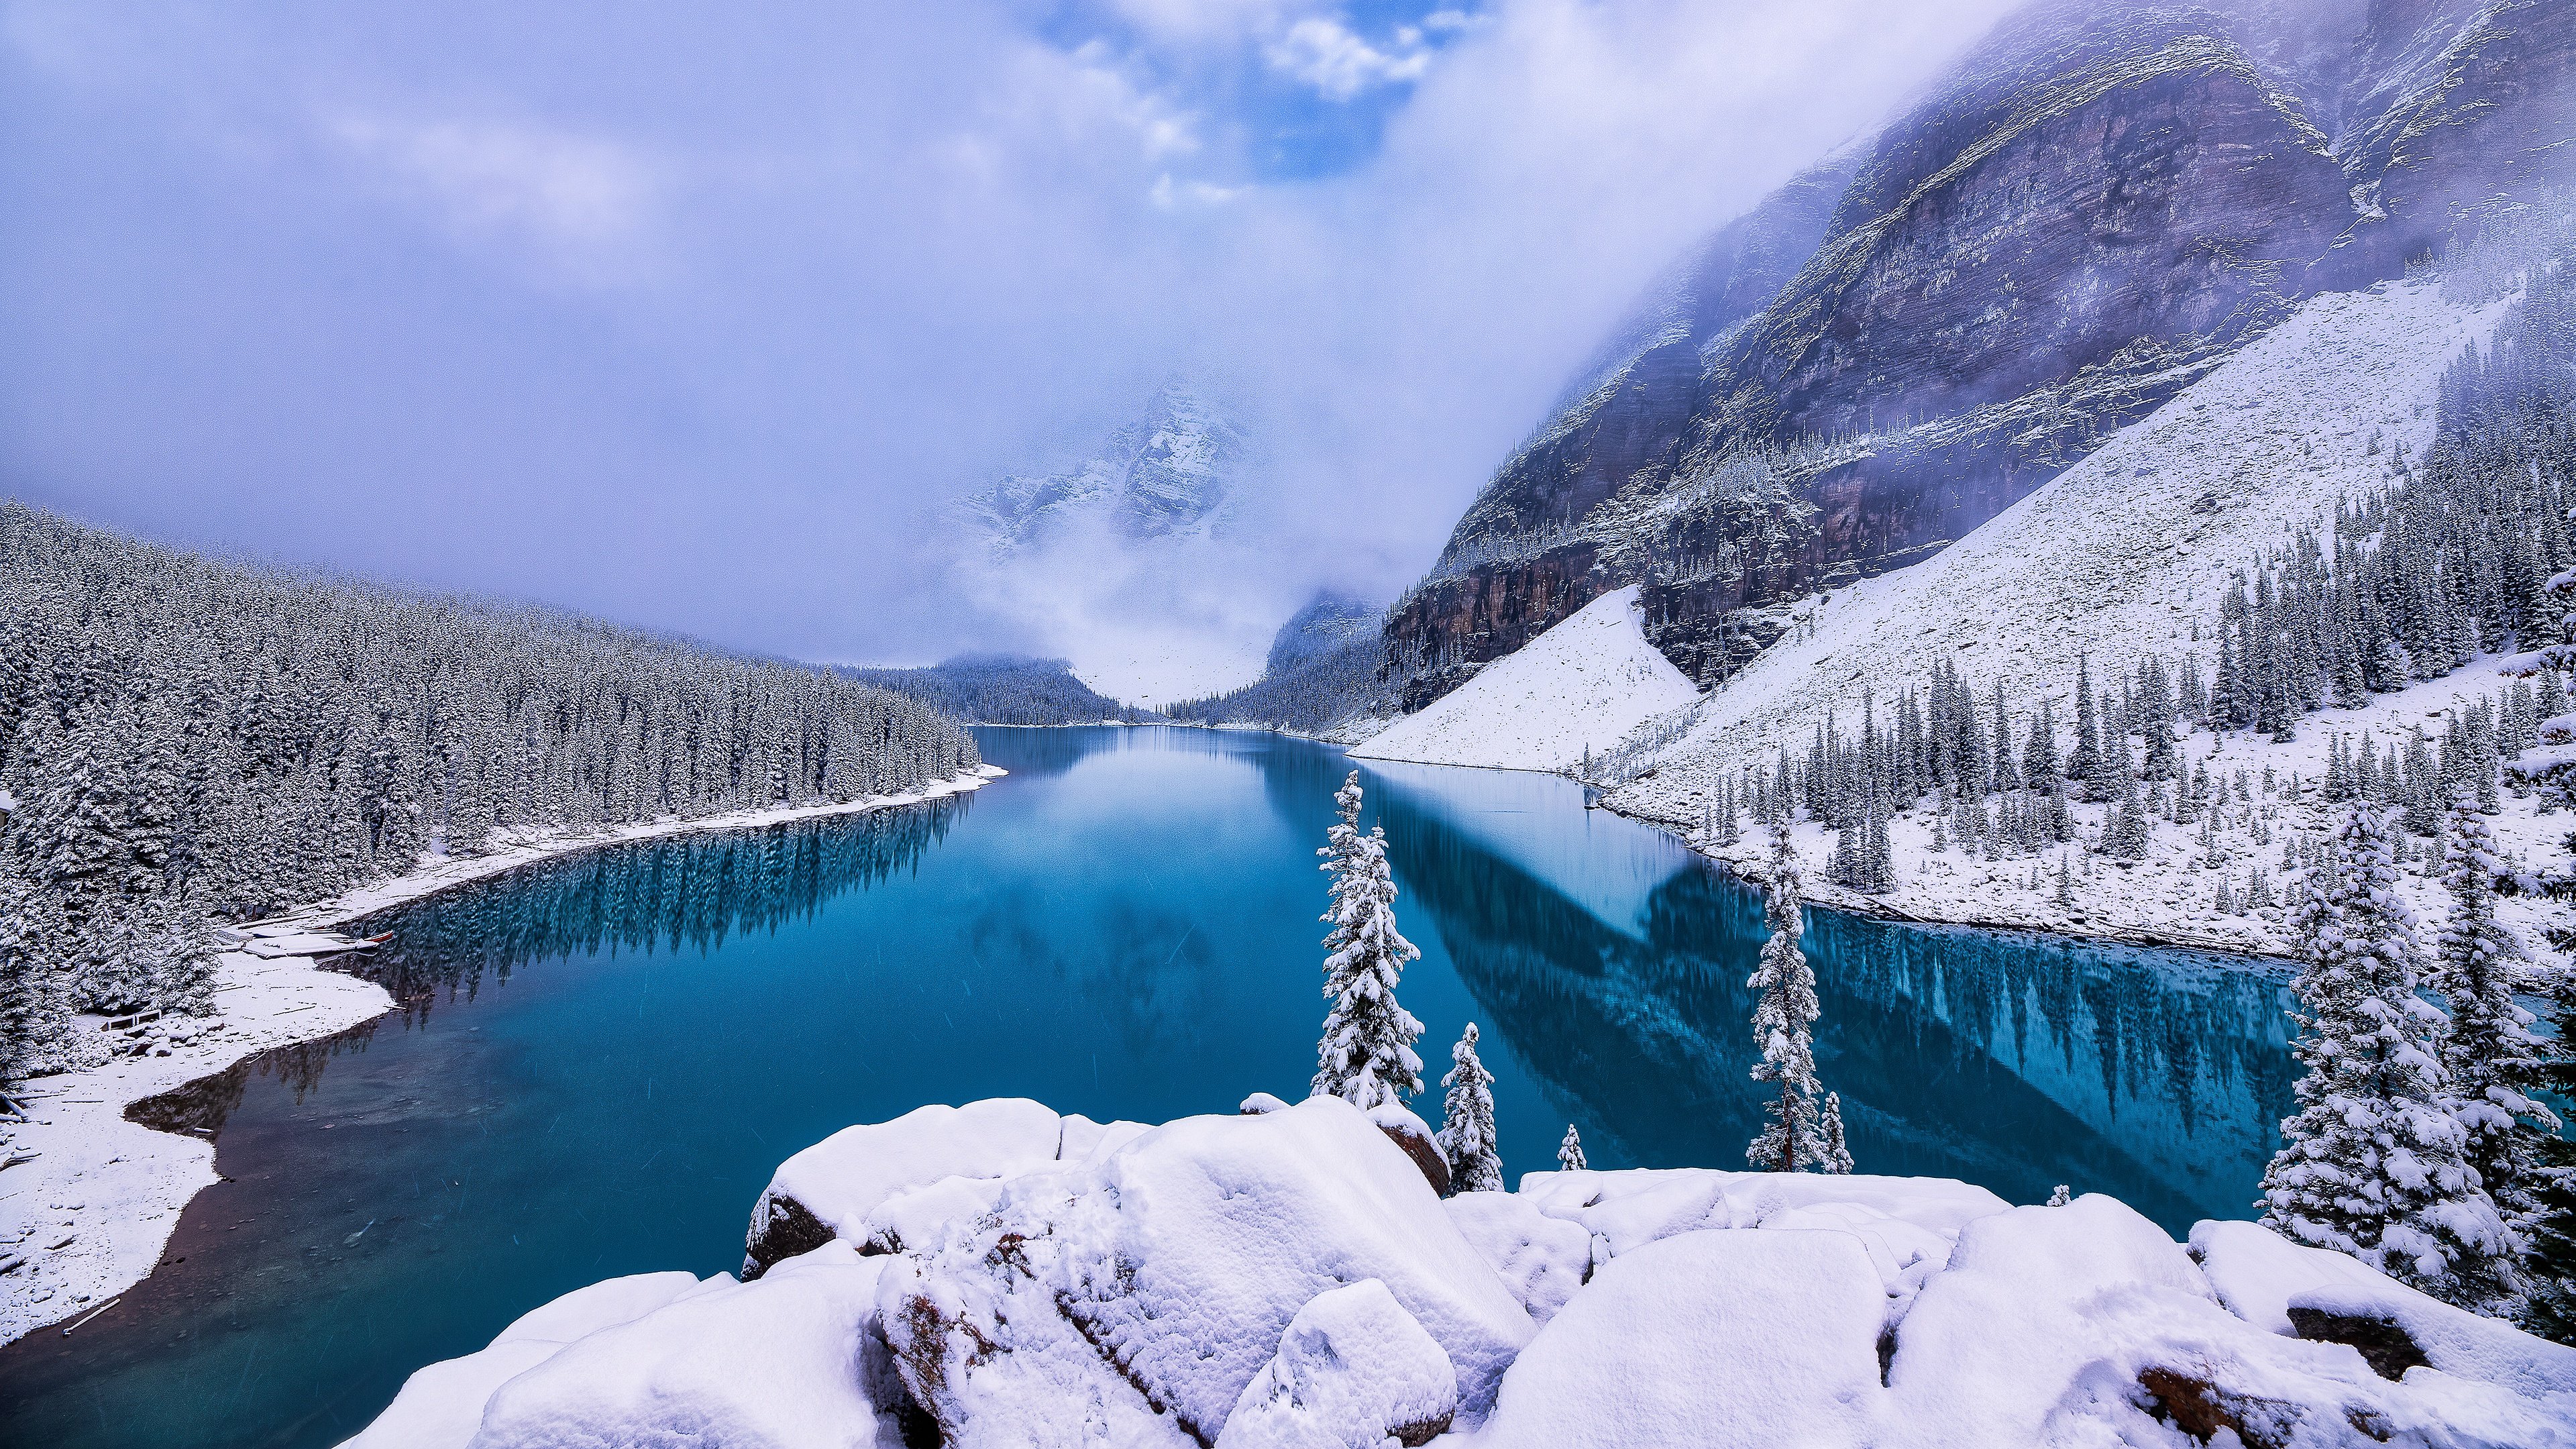 Канада 4. Озеро Морейн, Канада зима. Национальный парк Банфф, Канада зима. Озеро Морейн в Канаде зимой. Озеро Морейн, национальный парк Банф, Канада.